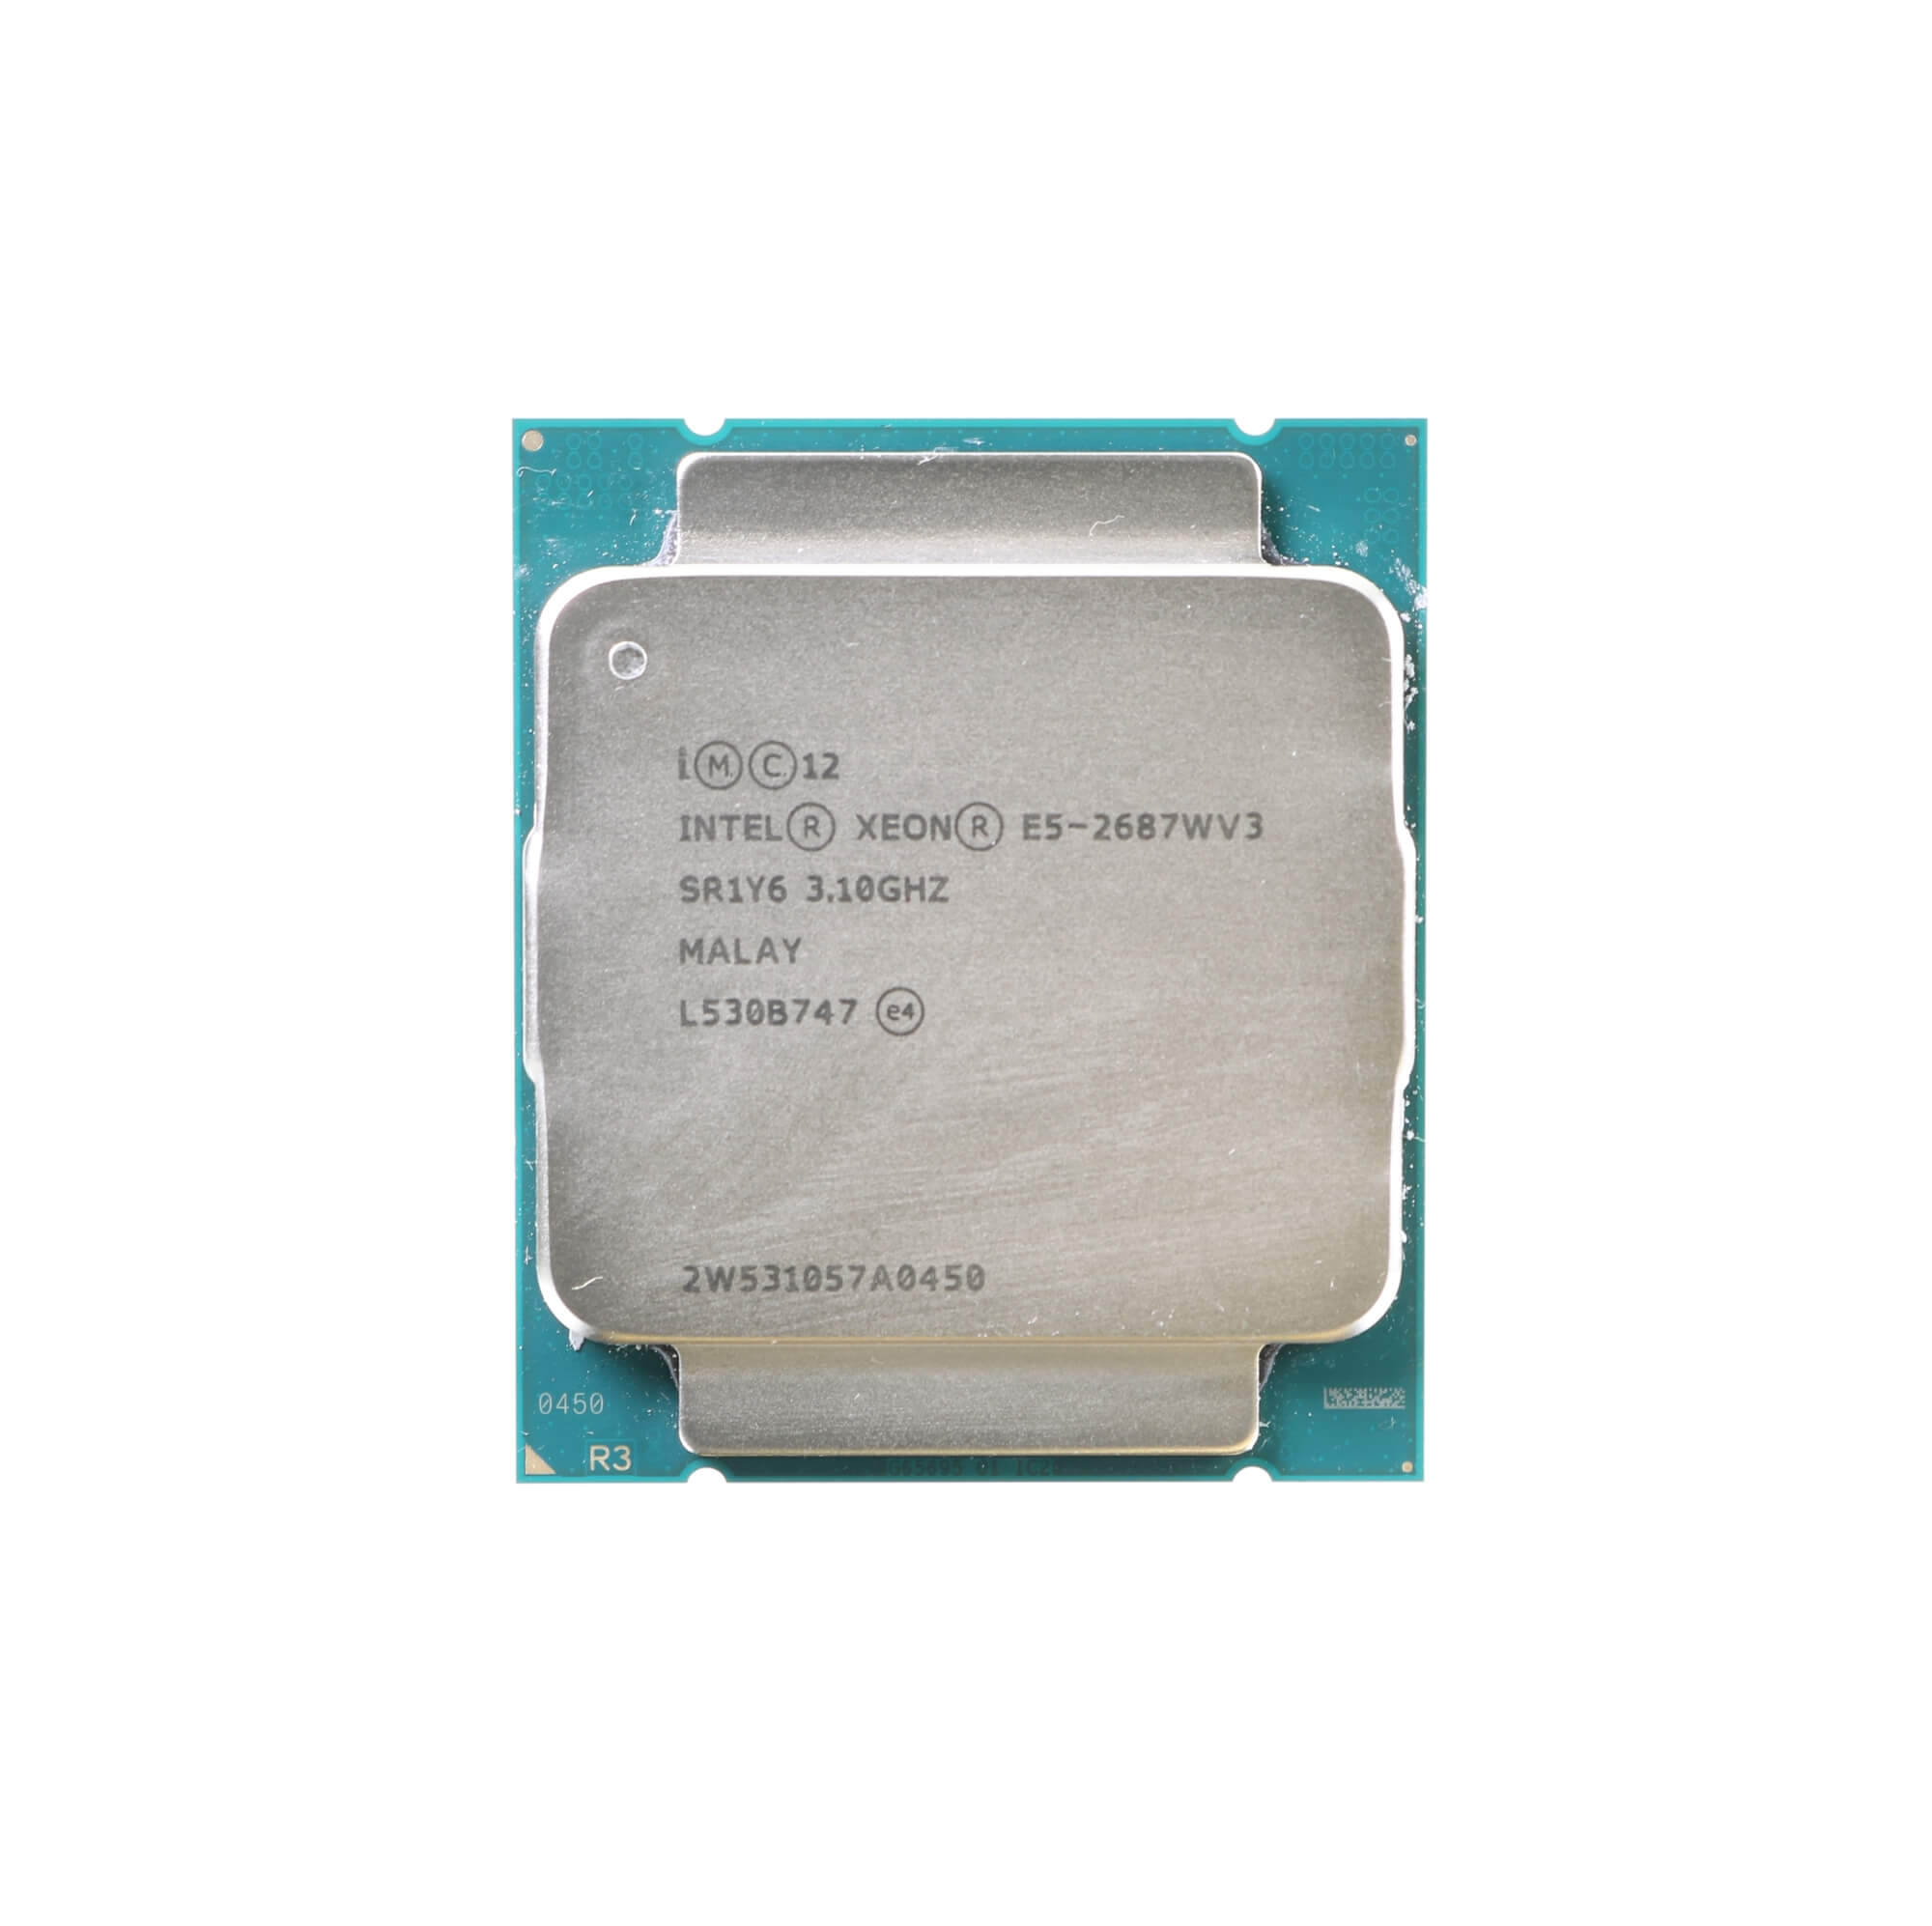 Intel Xeon E5-2687W V3 CPU Processor 10 Core 3.10GHz SR1Y6